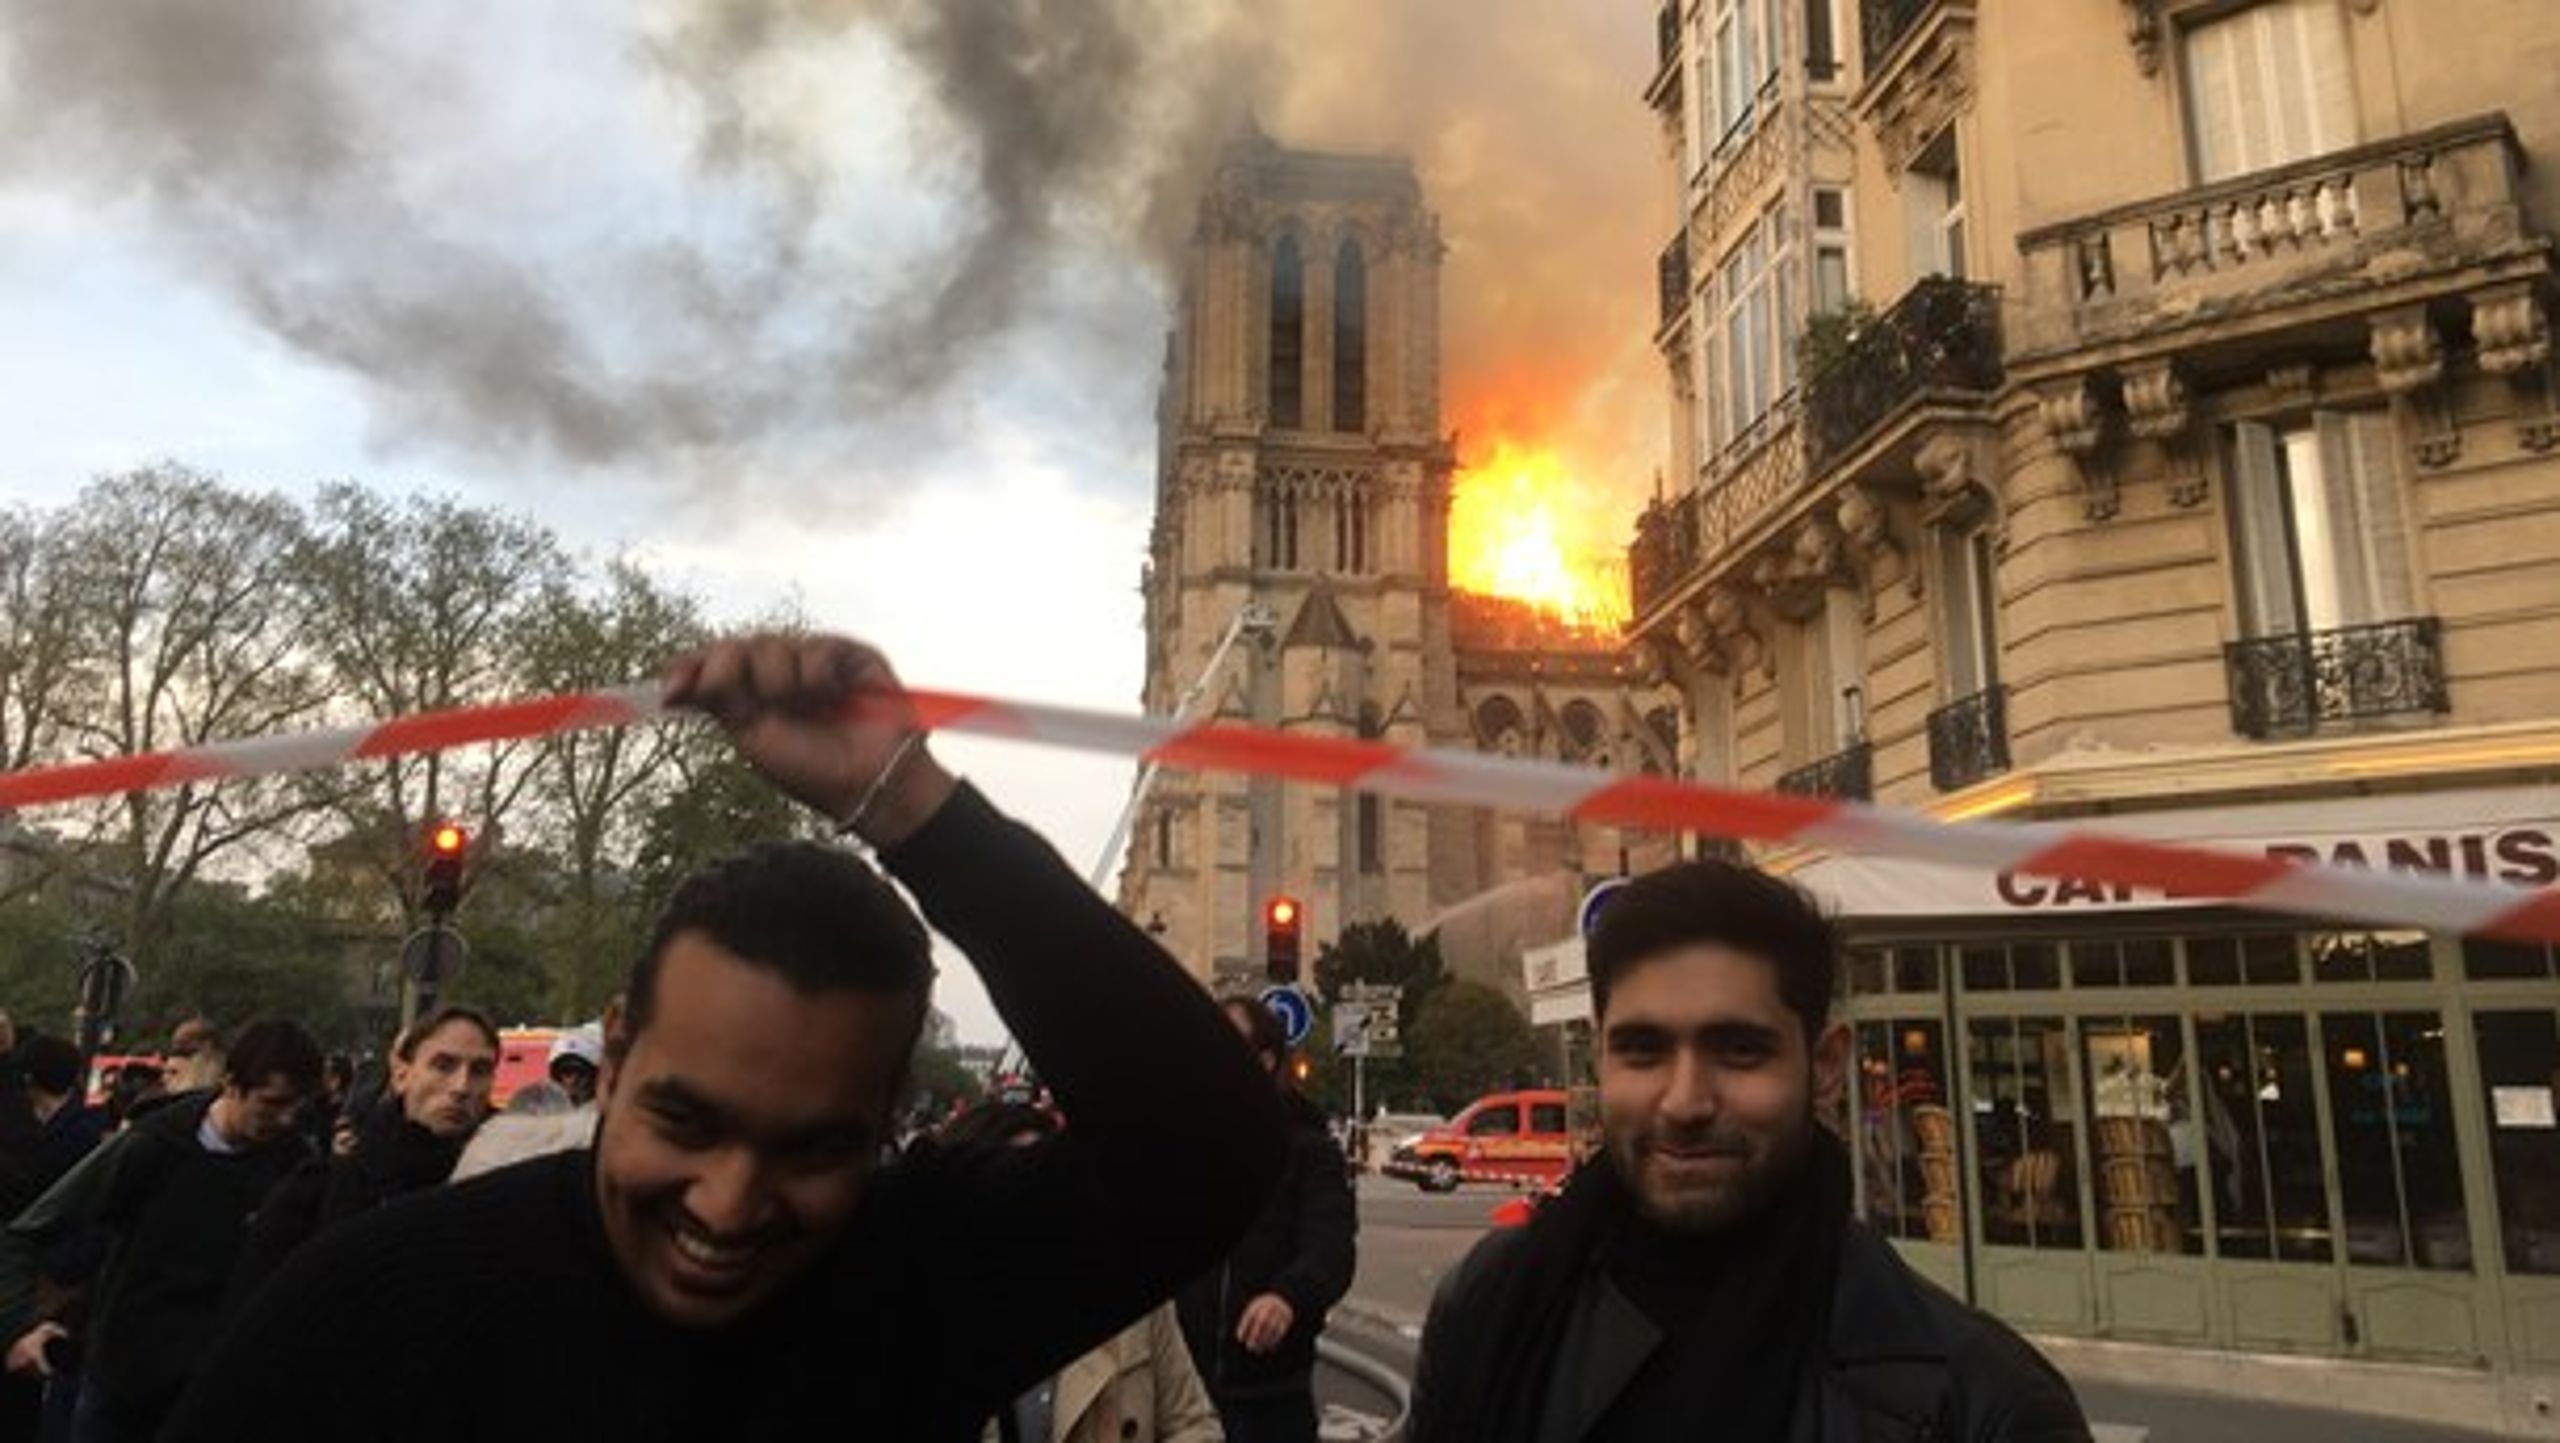 “Da jeg gik under politiets afspærringsbånd, slog det tilbage i mit ansigt, og det fik os til at grine,” fortæller den ene af de to arkitektstuderende, der bliver beskyldt for at more sig over branden i Notre Dame.